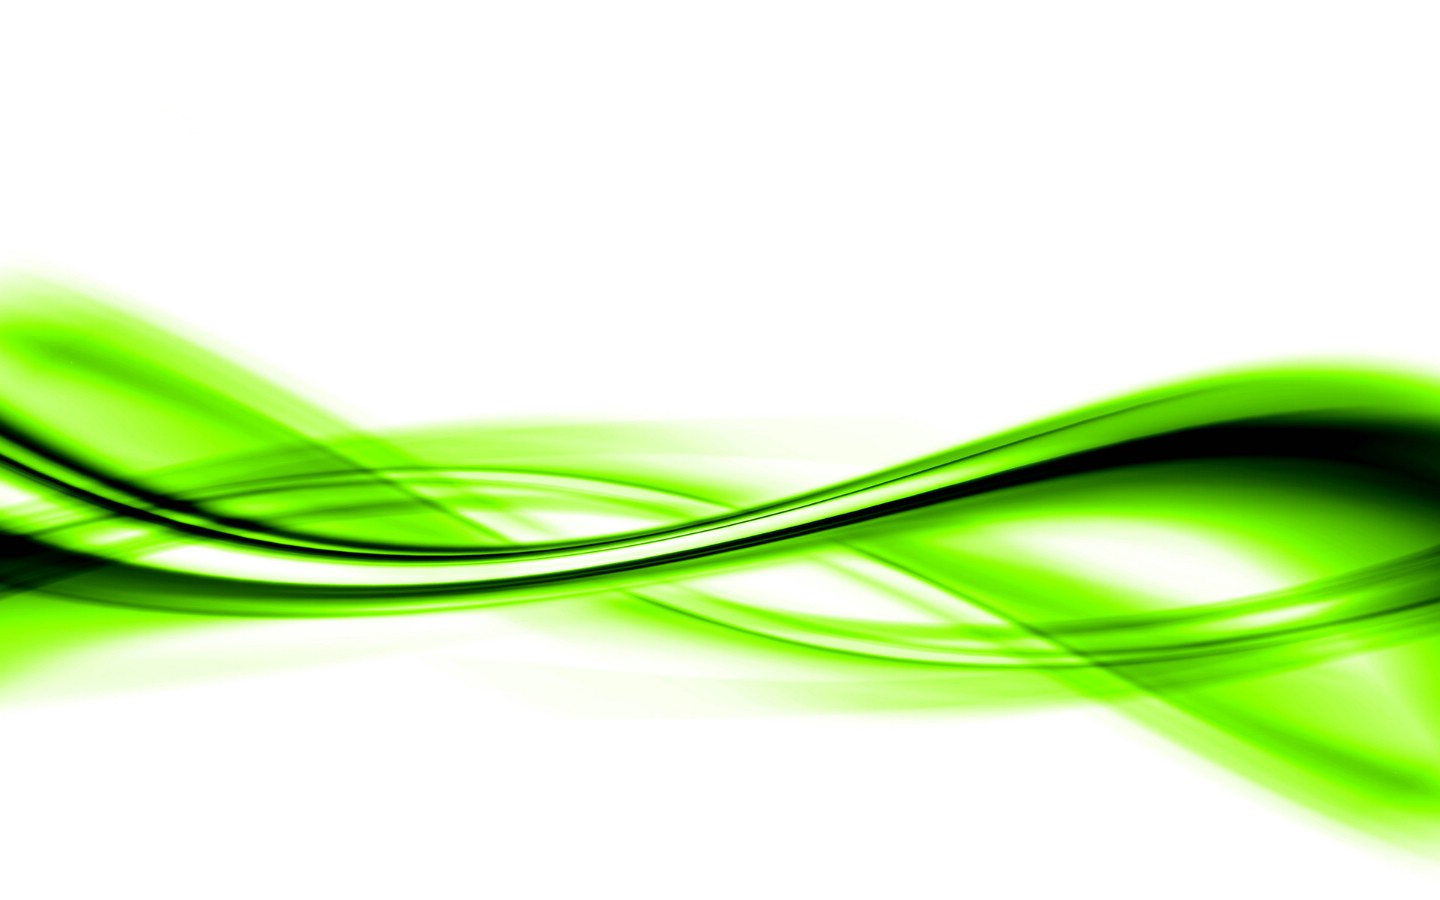 壁纸1440x900PS效果绿色光线壁纸 PS效果绿色光线壁纸 PS效果绿色光线图片 PS效果绿色光线素材 创意壁纸 创意图库 创意图片素材桌面壁纸